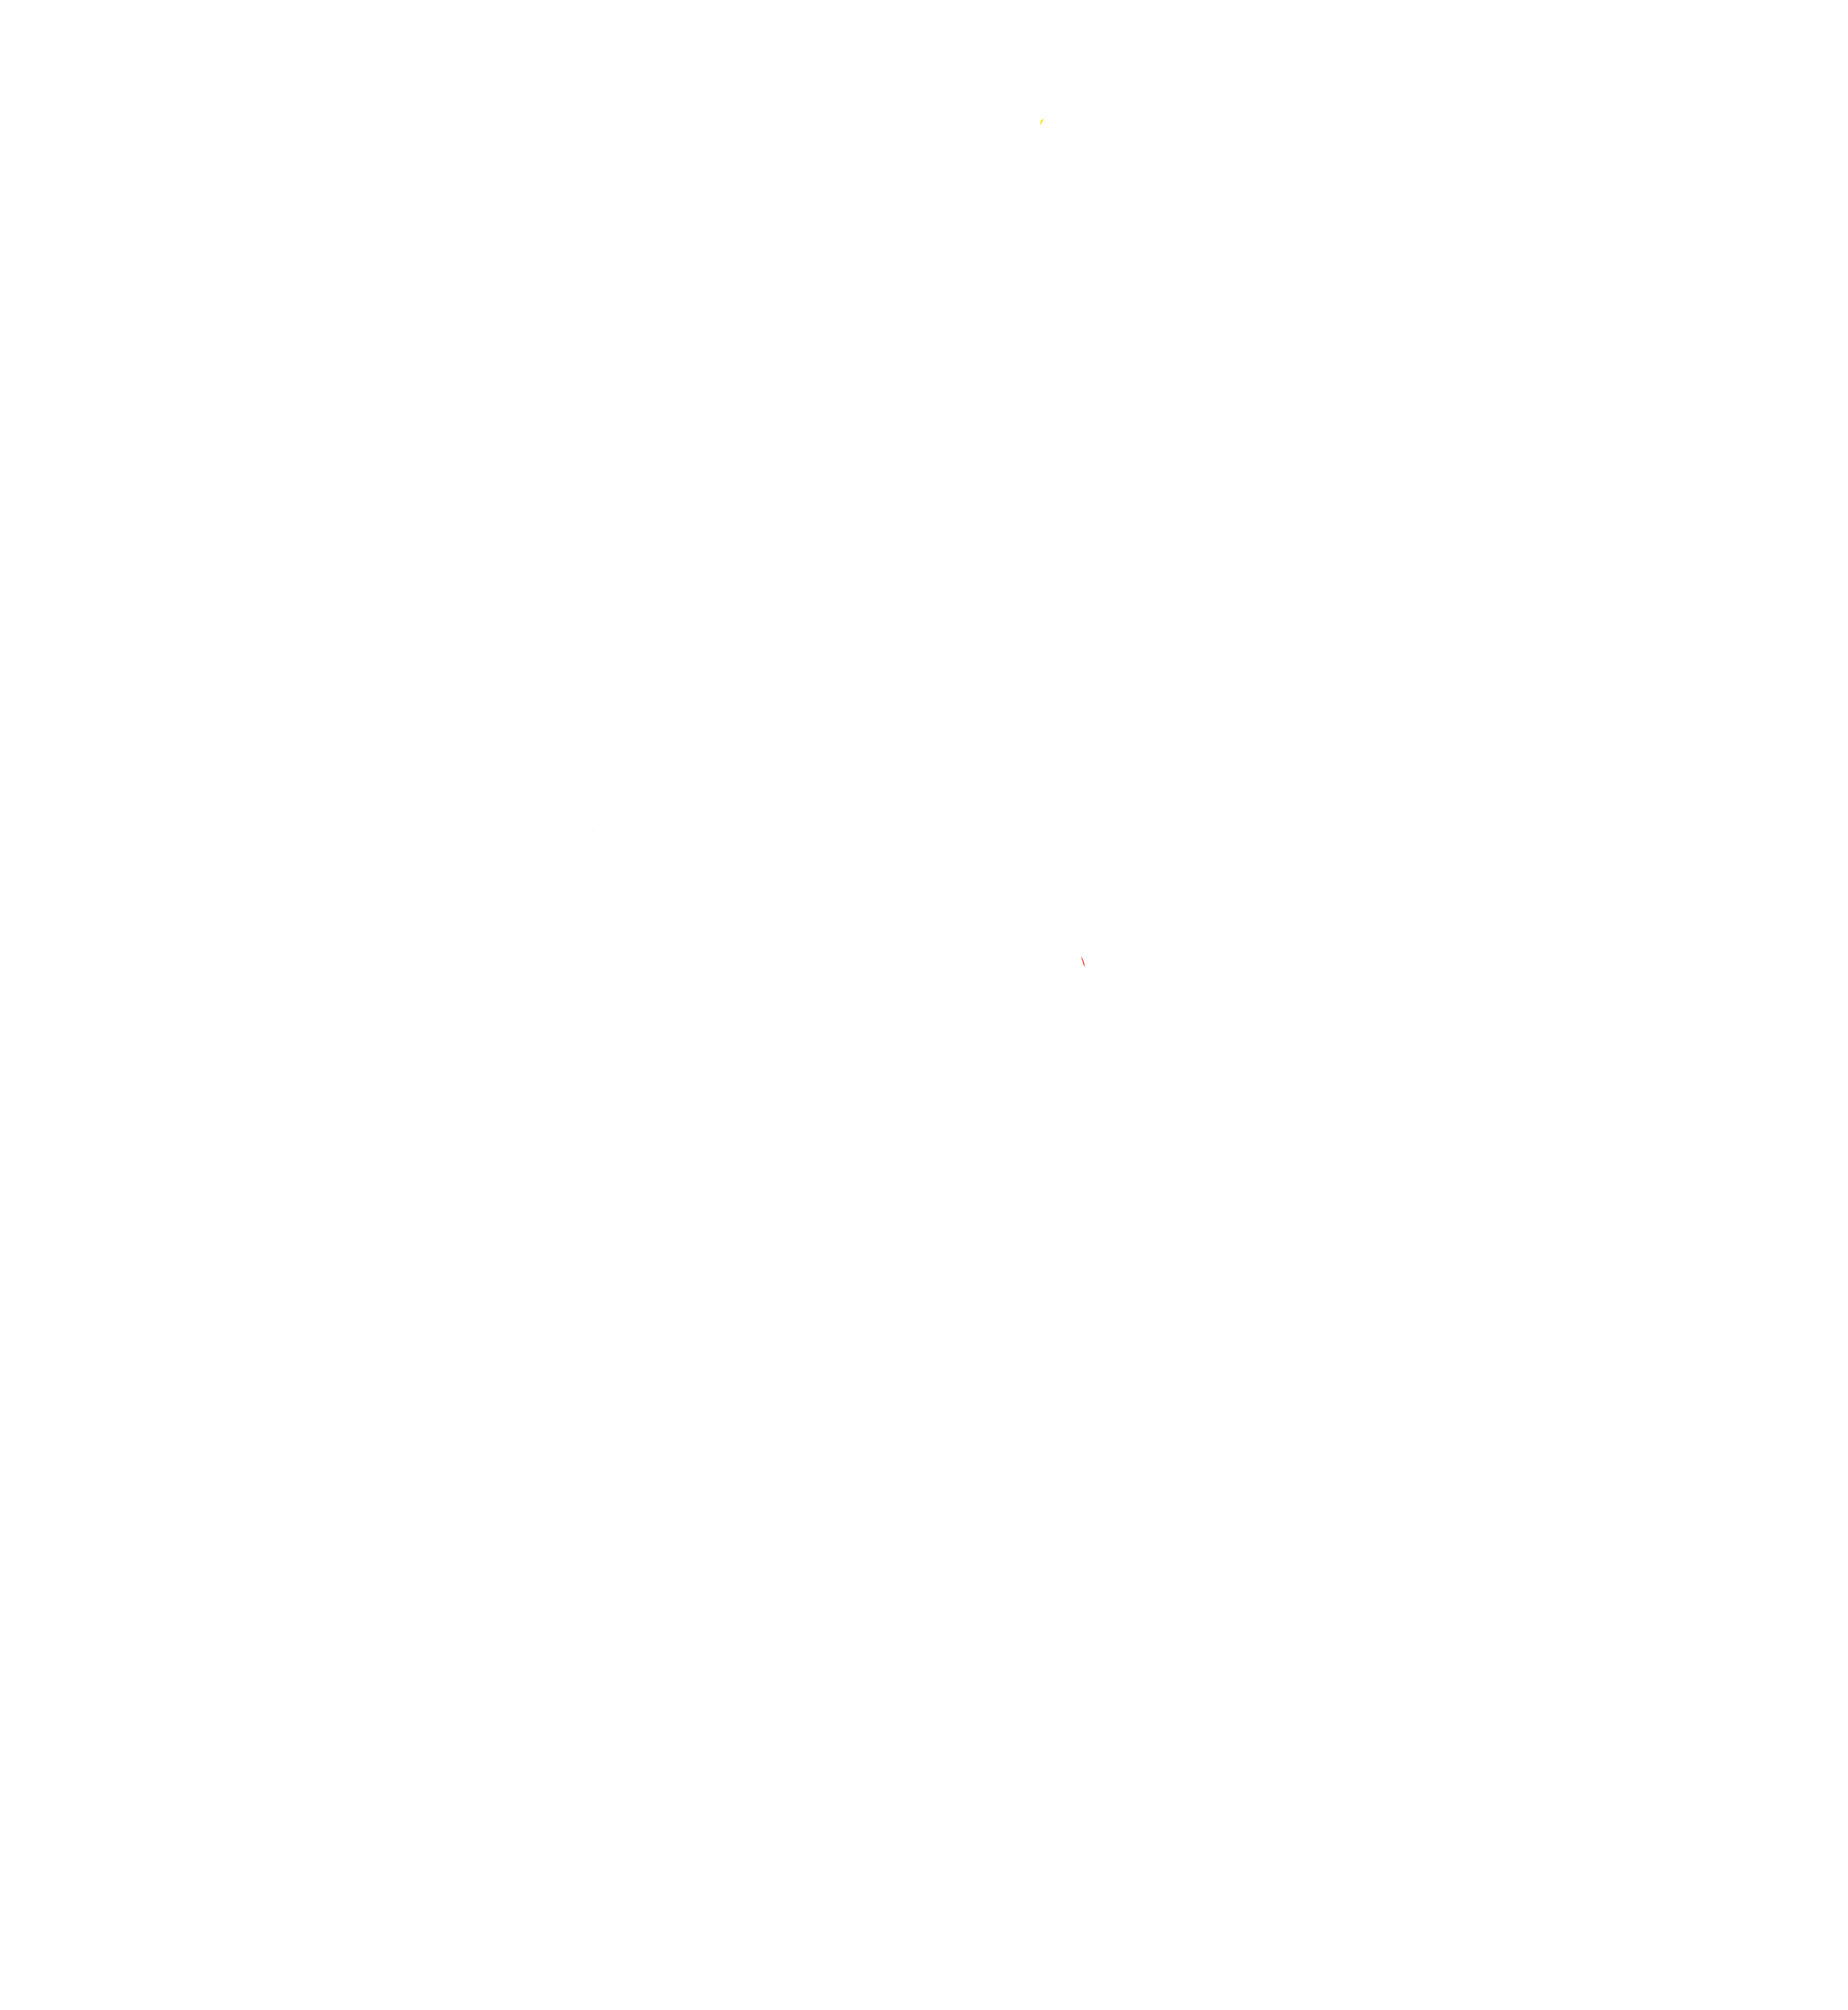 Higher Revelation, LLC